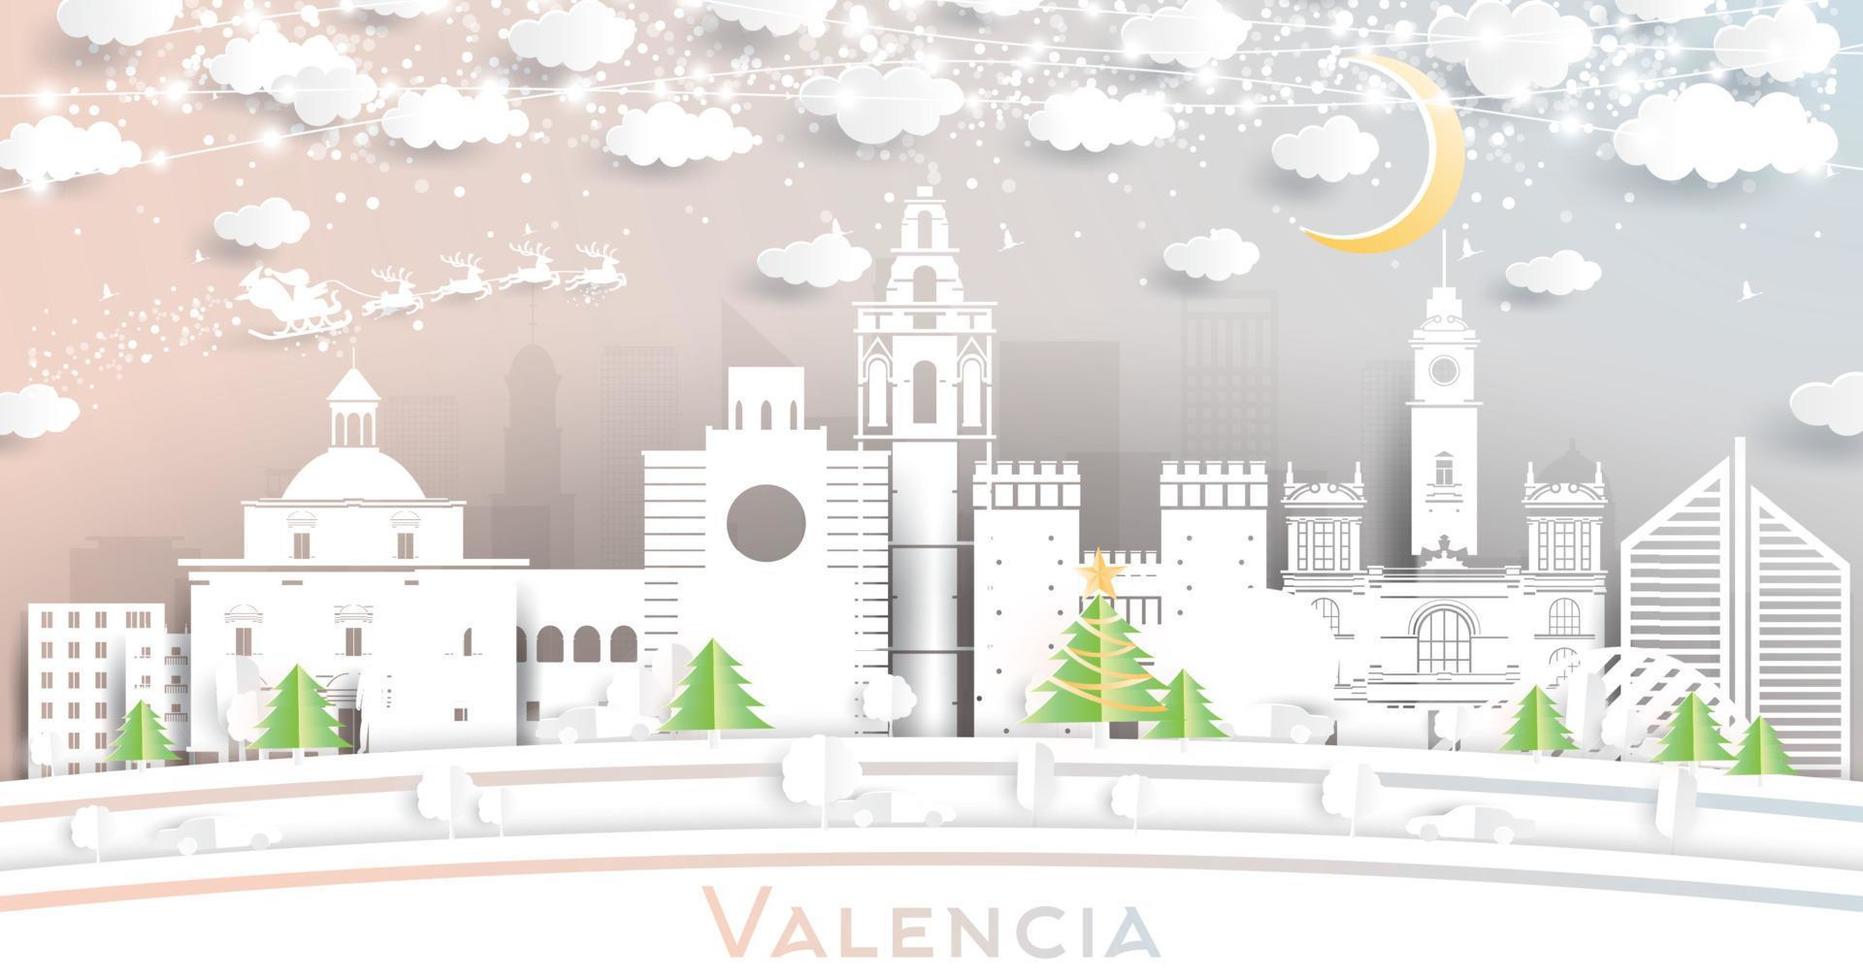 horizonte de la ciudad de valencia españa en estilo de corte de papel con copos de nieve, luna y guirnalda de neón. vector